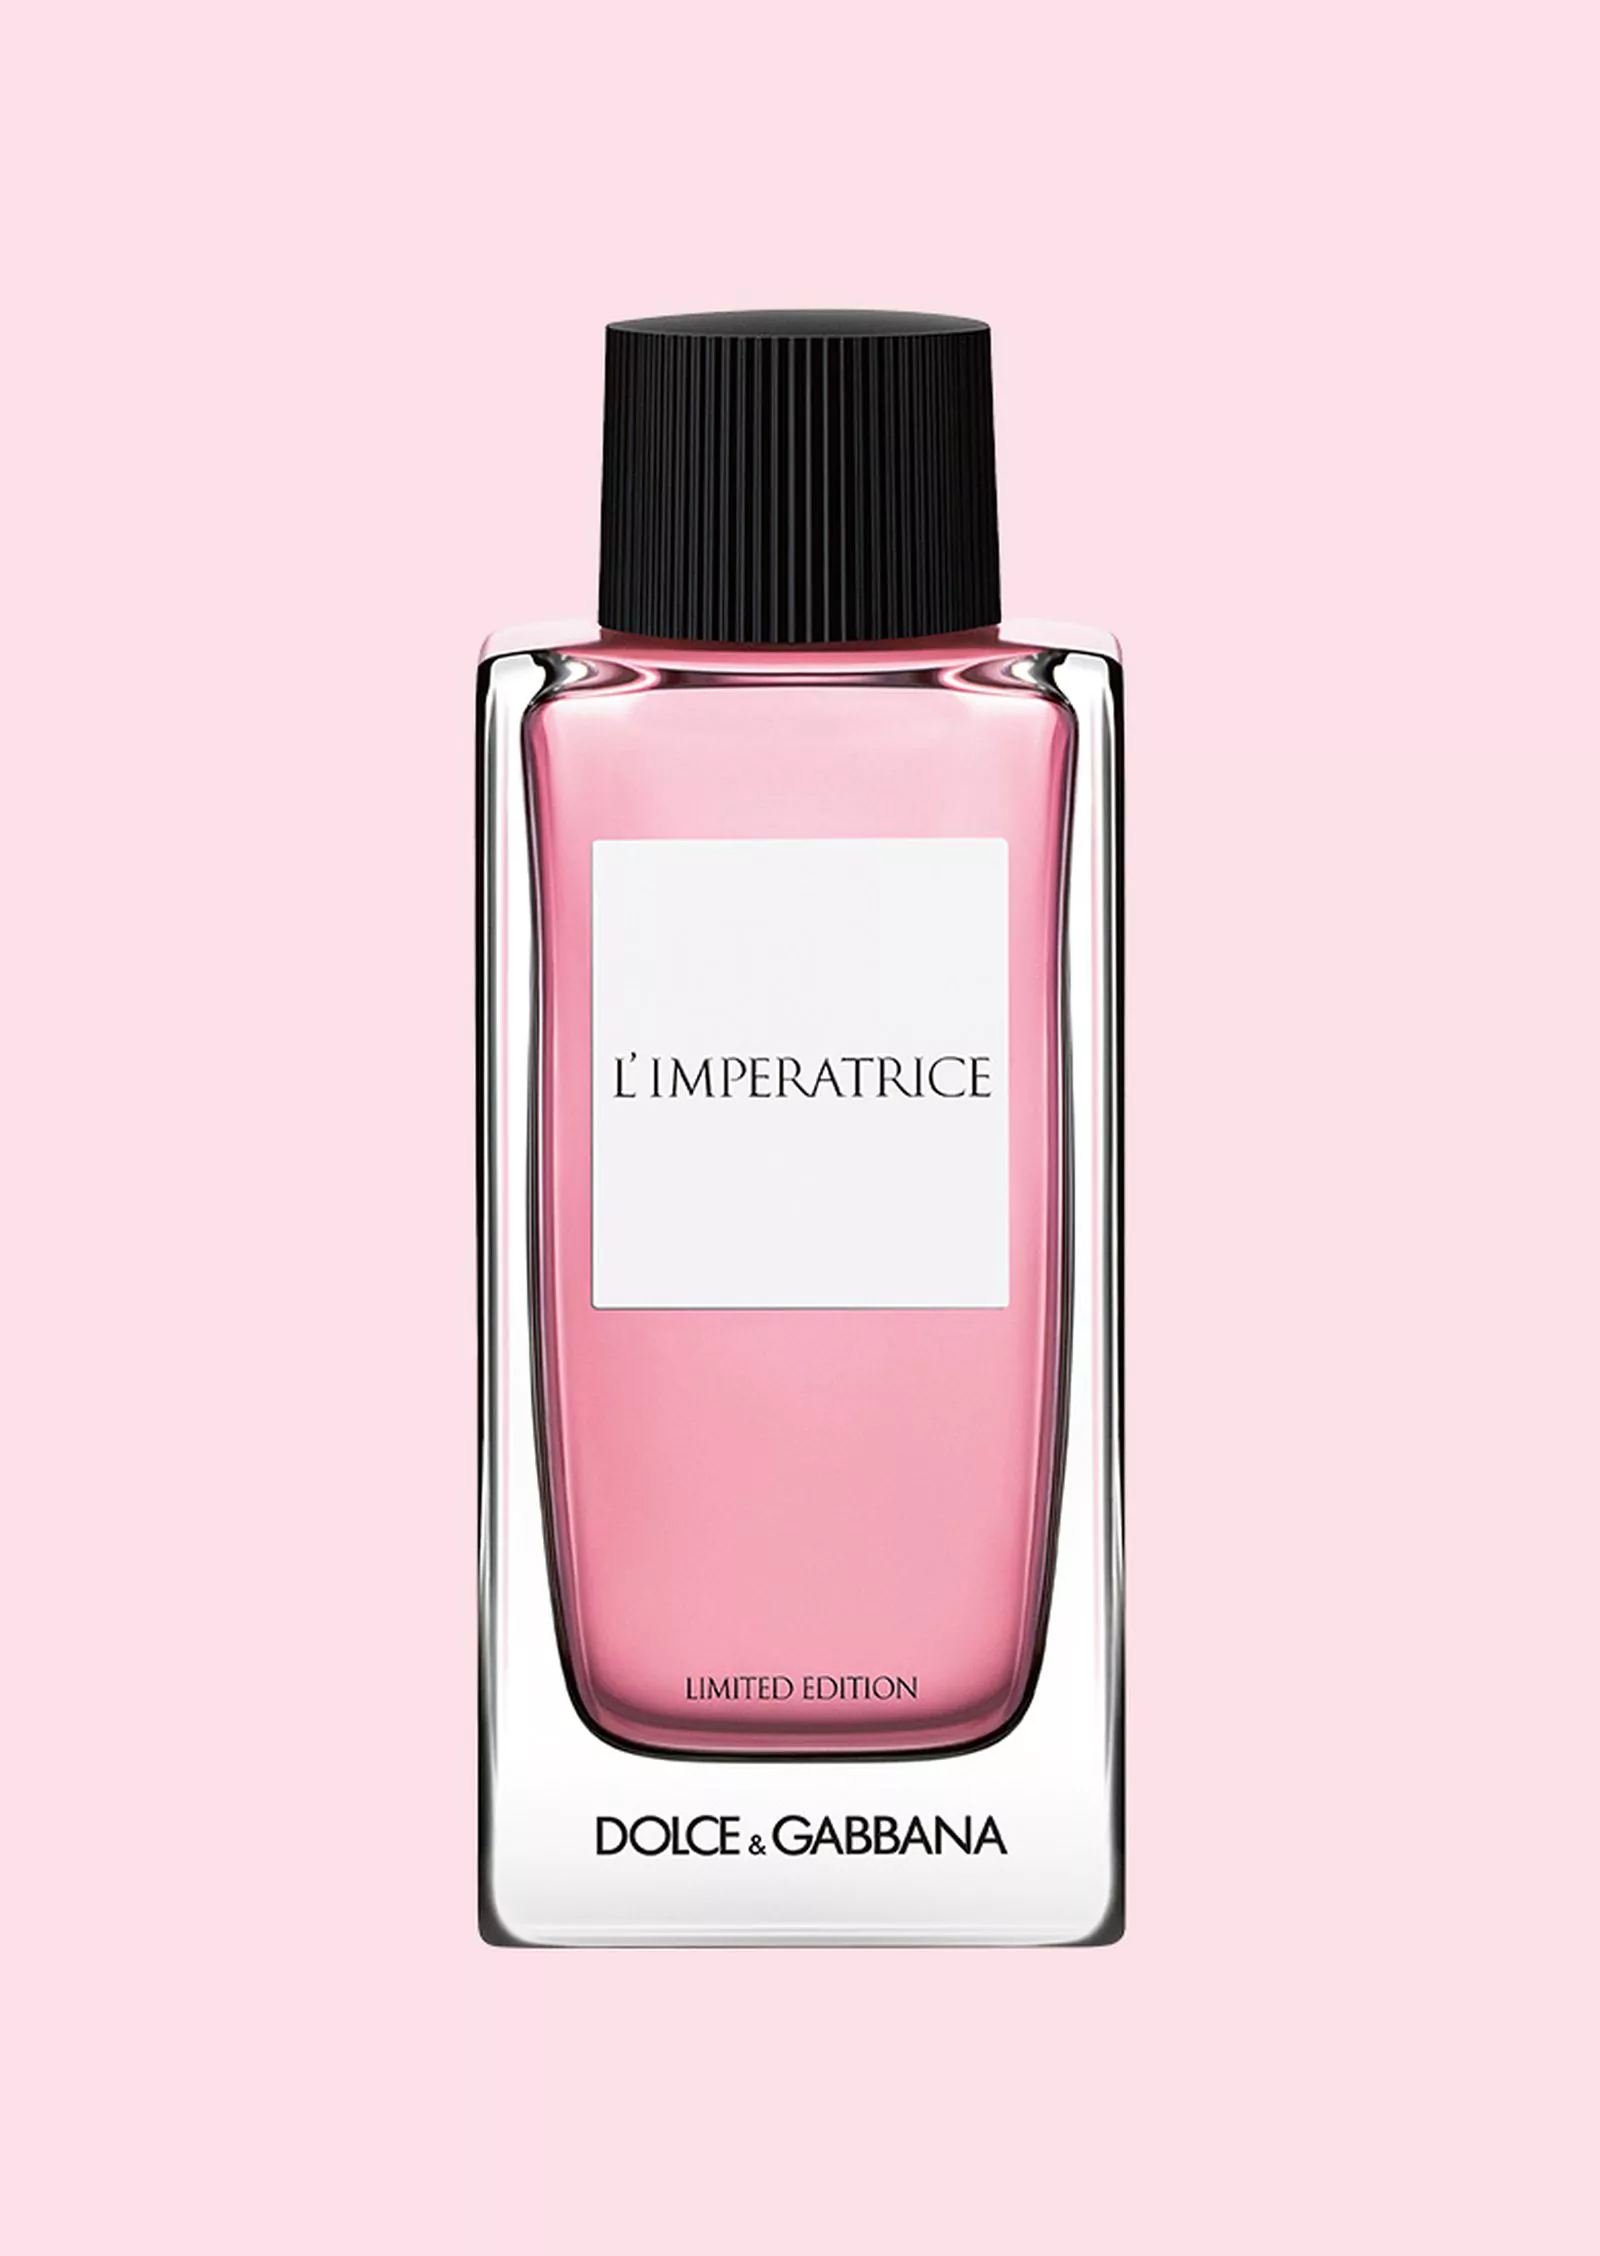 Dolce&Gabbana, L’Imperatrice, лимитированный выпуск для России